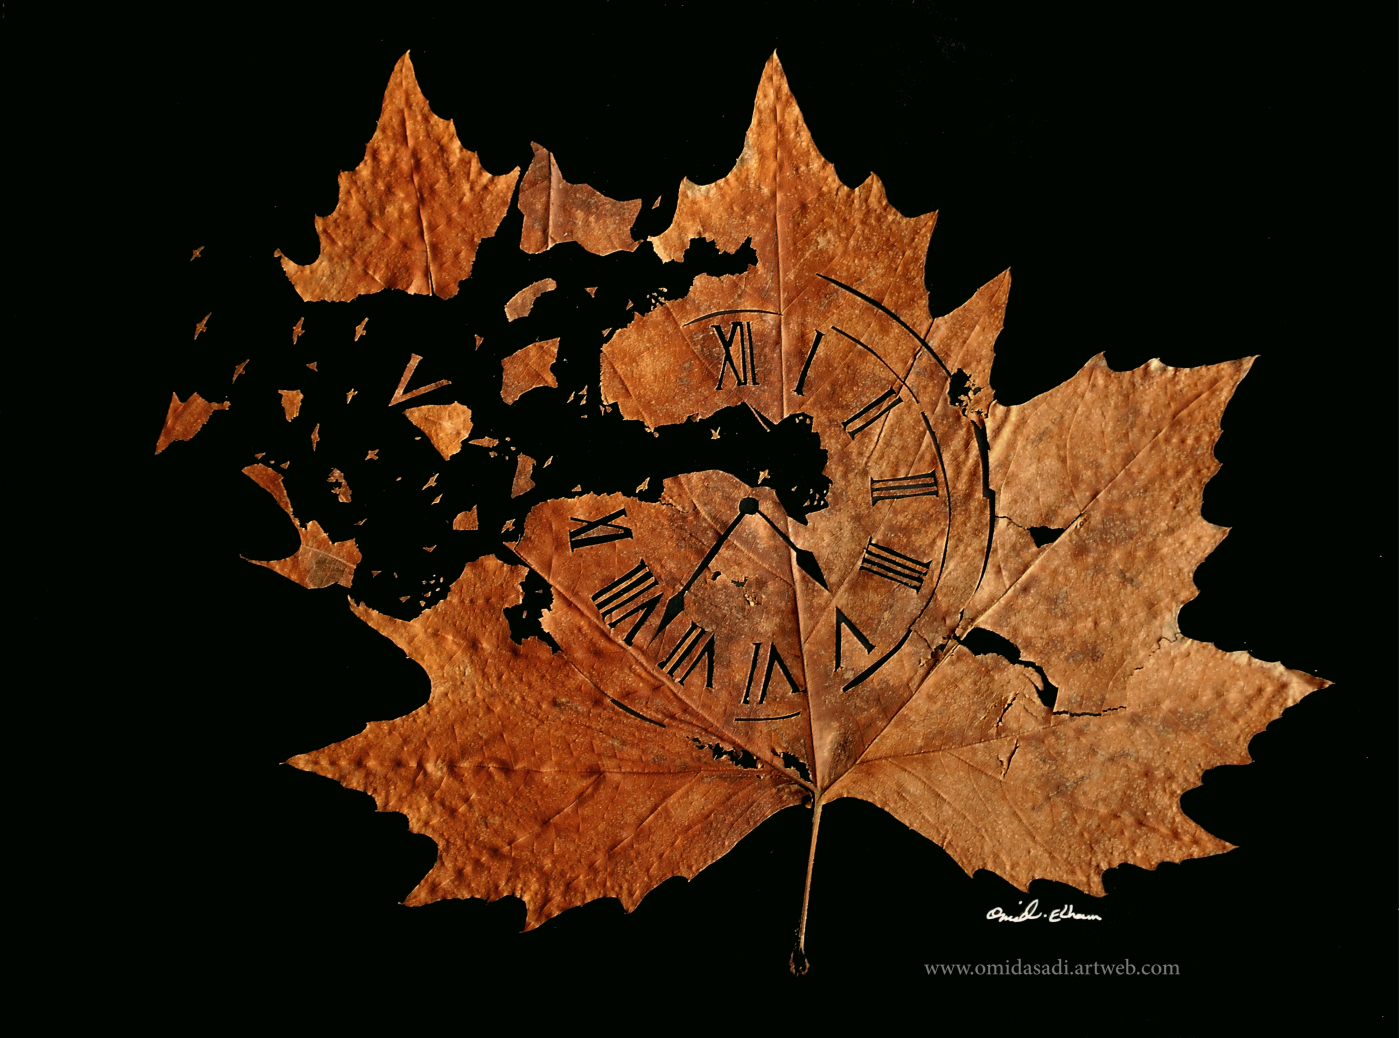 Omid Asadi sculpte des scènes étonnantes sur des feuilles d'arbres